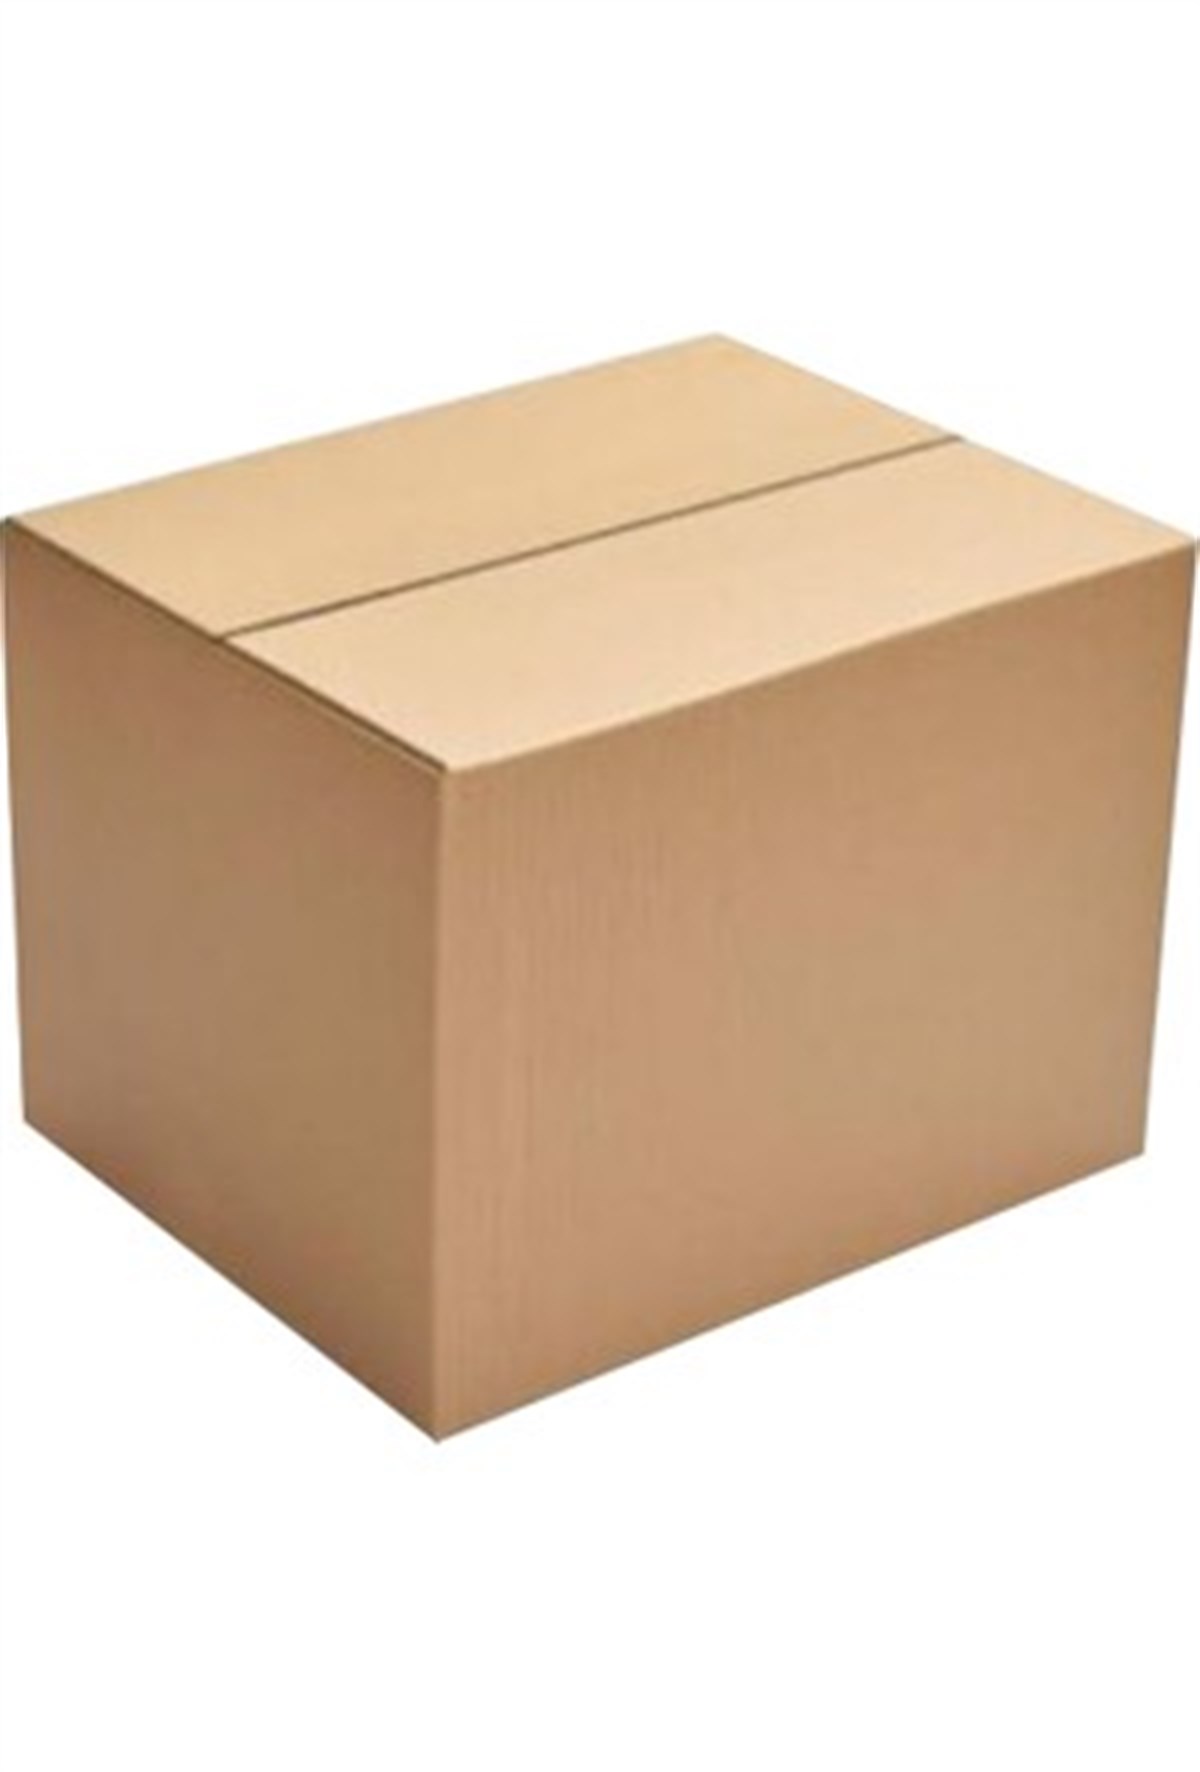 Karton Kutu ve Paketleme Kolisi | 22 x 22 x 25 CM